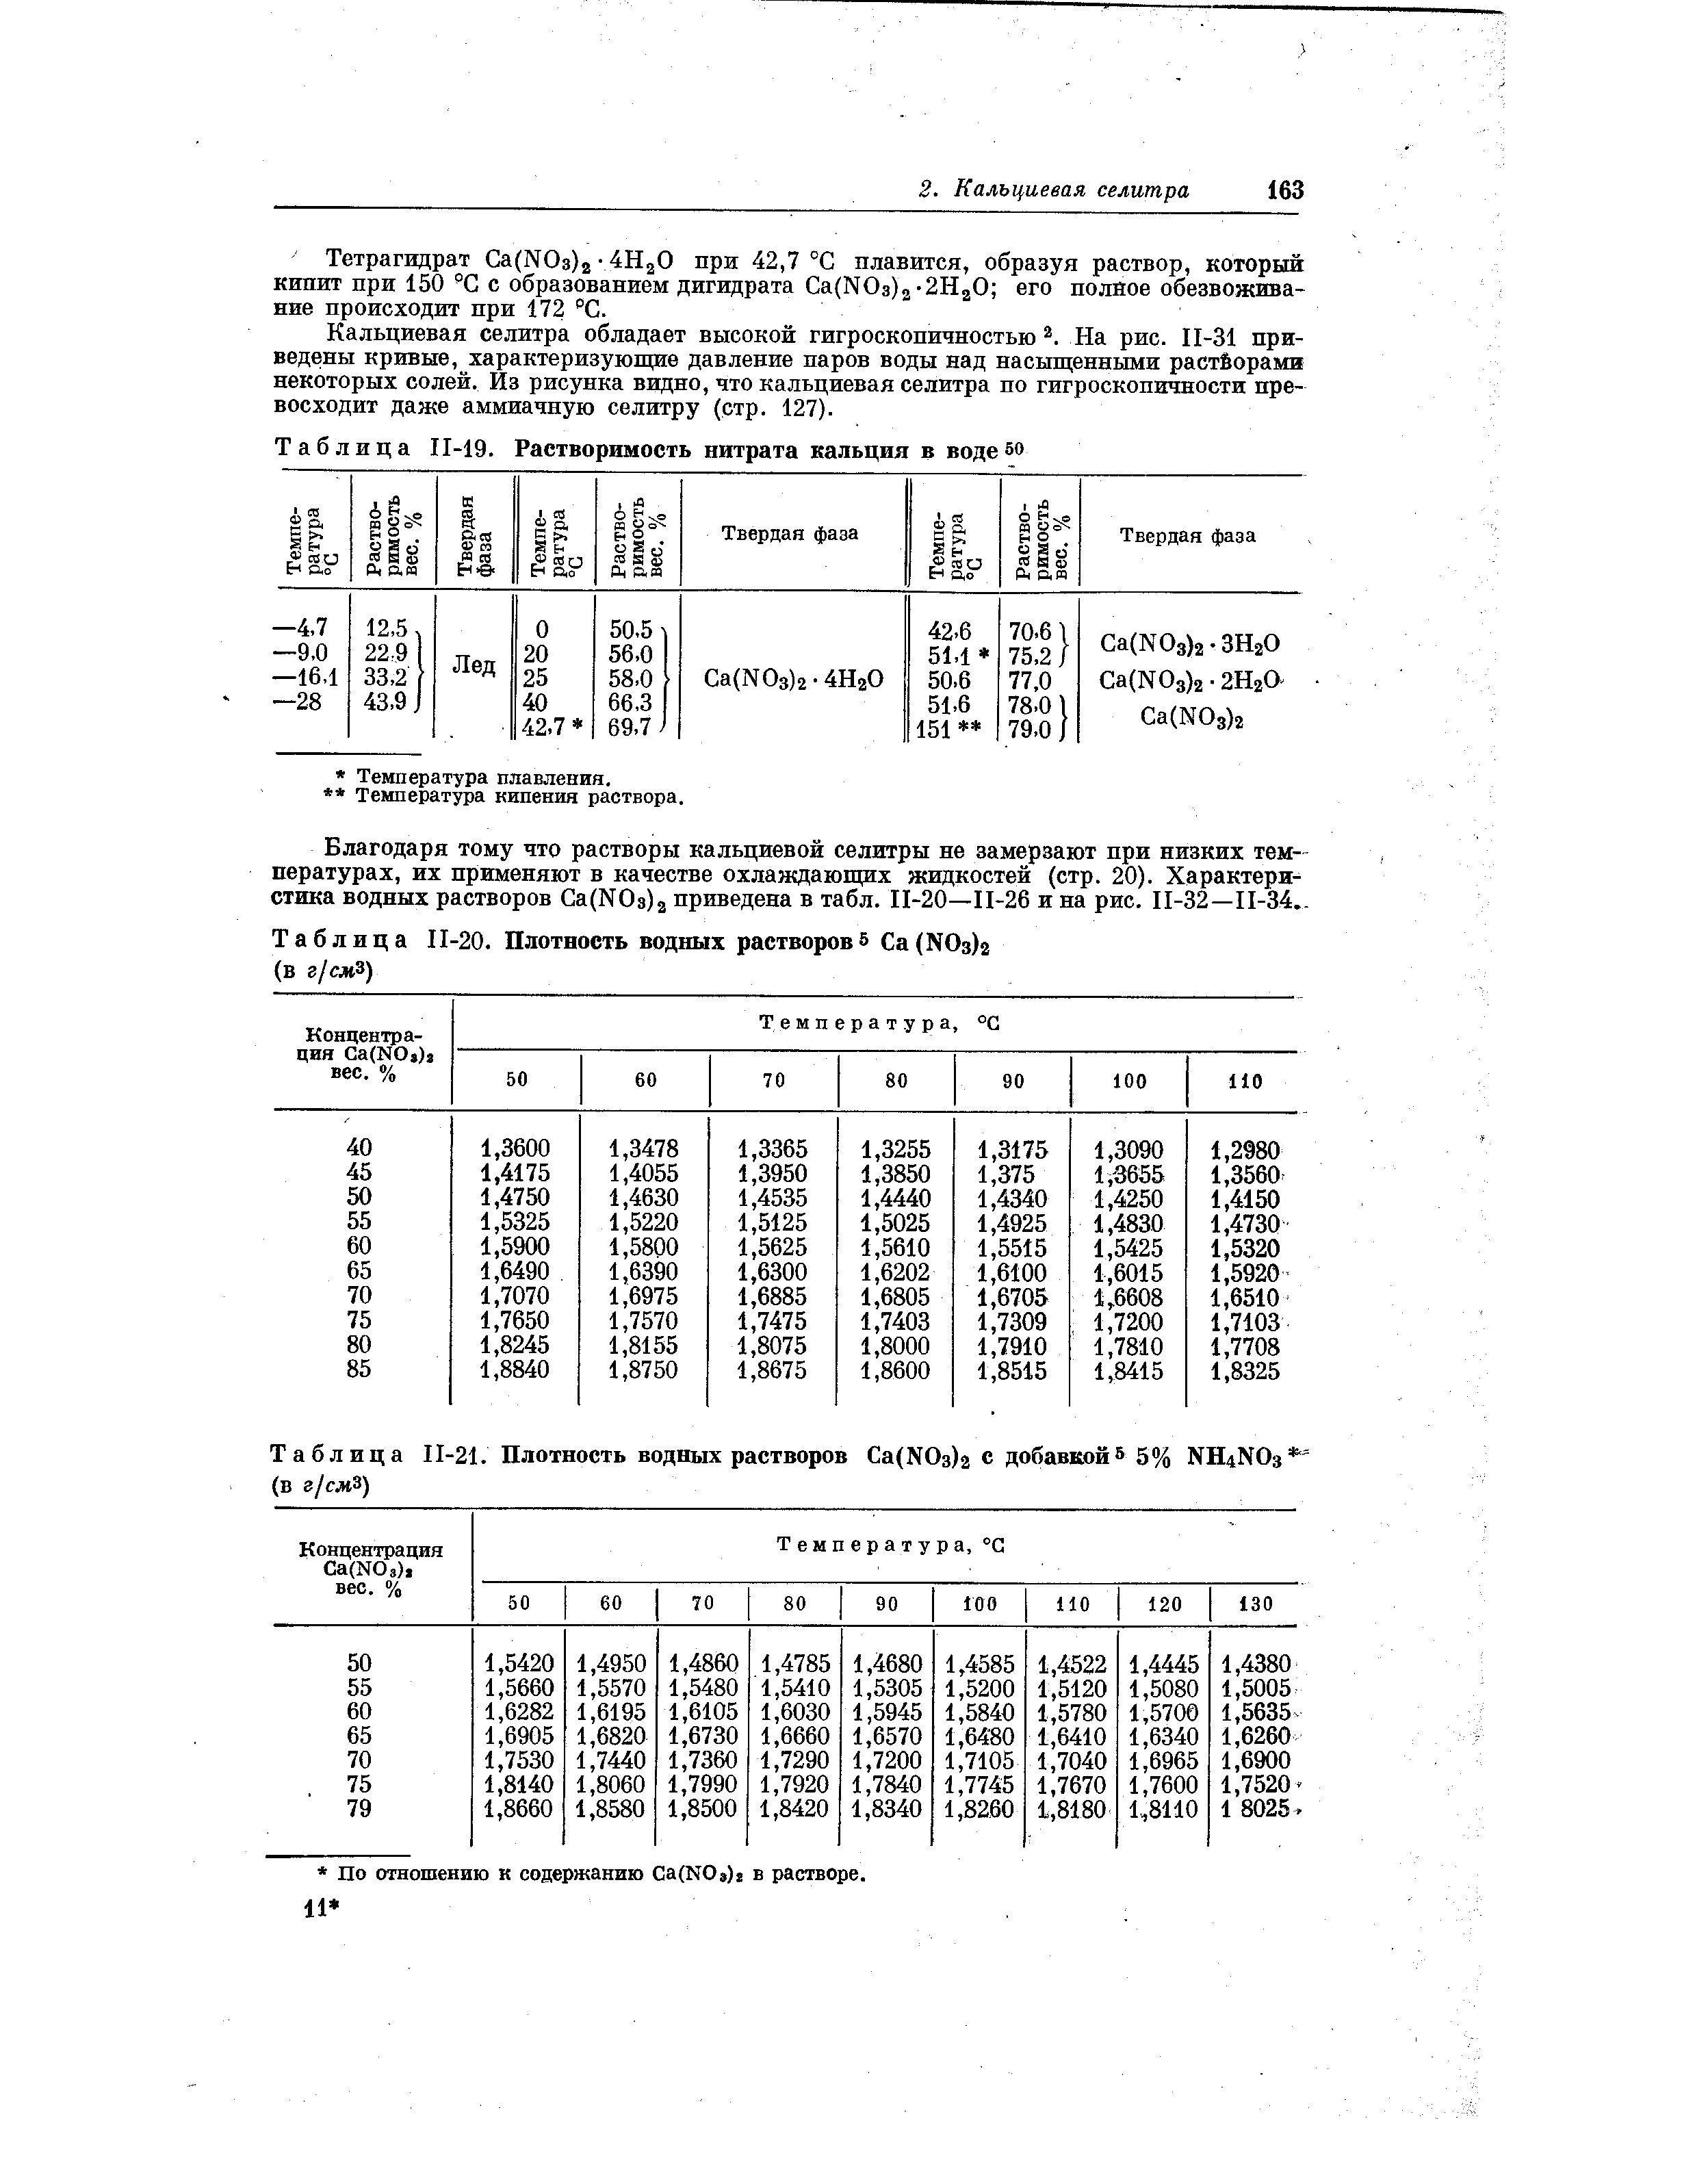 Таблица П-21. Плотность водных растворов a(NOз)2 с добавкой 5% NH4N0з (в г/слЗ)
